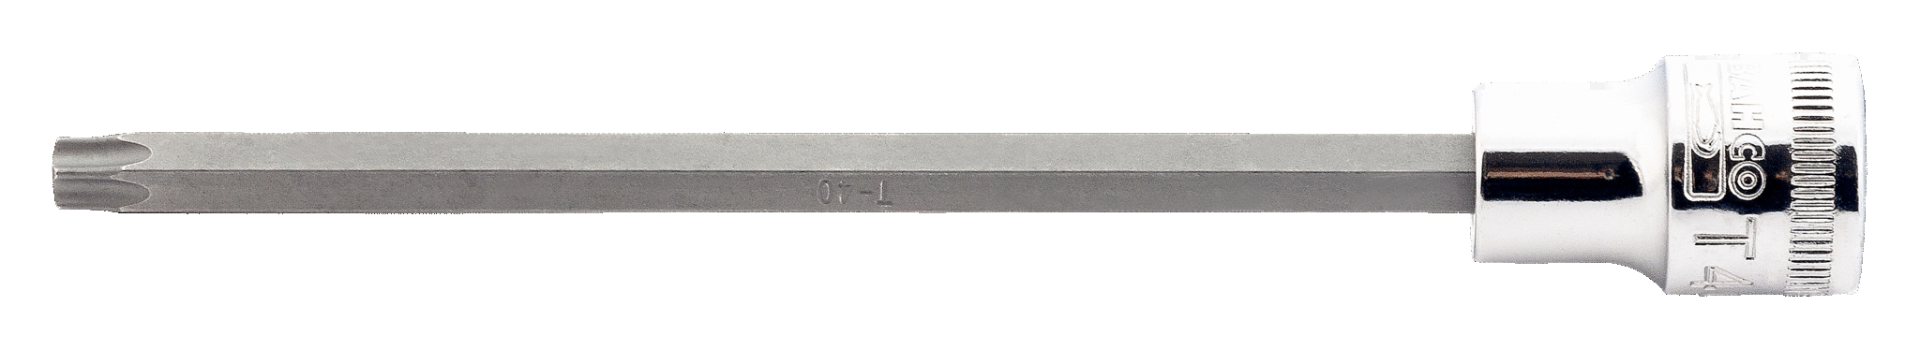 Торцевая головка с отверткой под винты TORX®, удлиненная  7409TORX-L